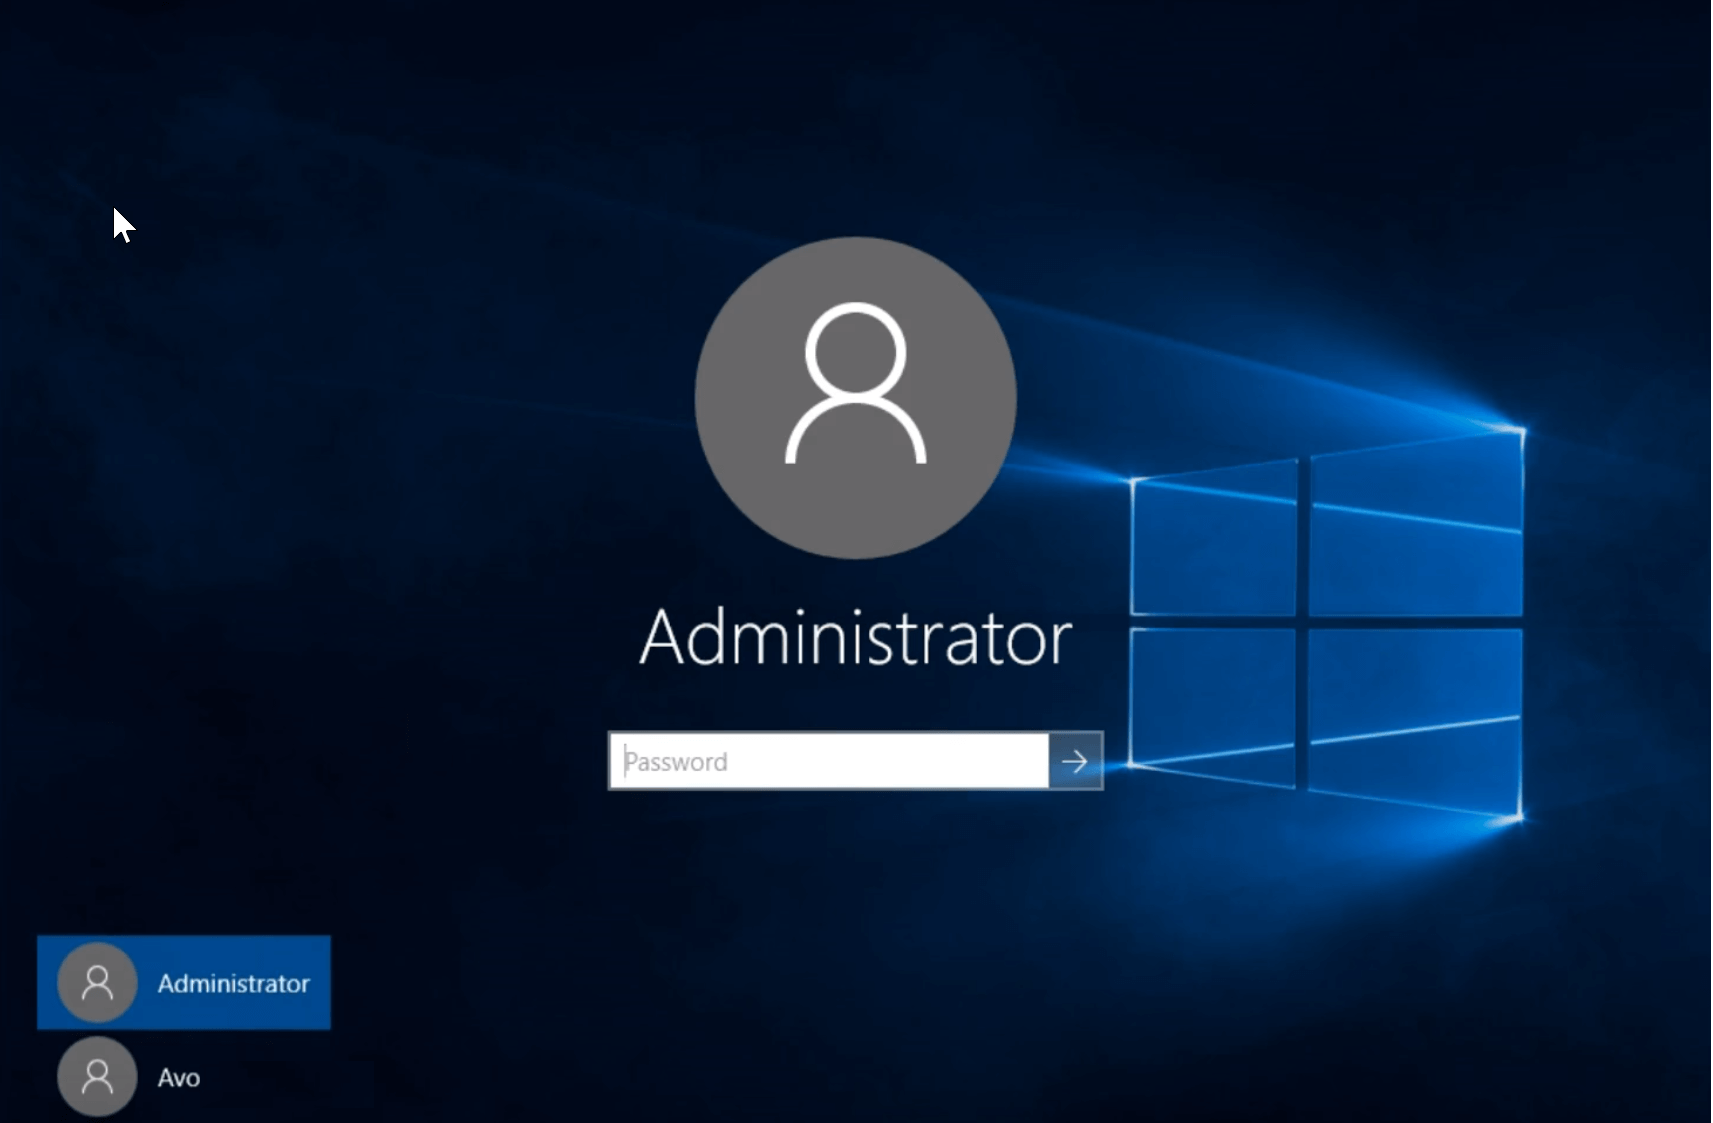 Cara menginstal perangkat lunak tanpa hak administrator di Windows 10 [SIMPLE GUIDE] 2